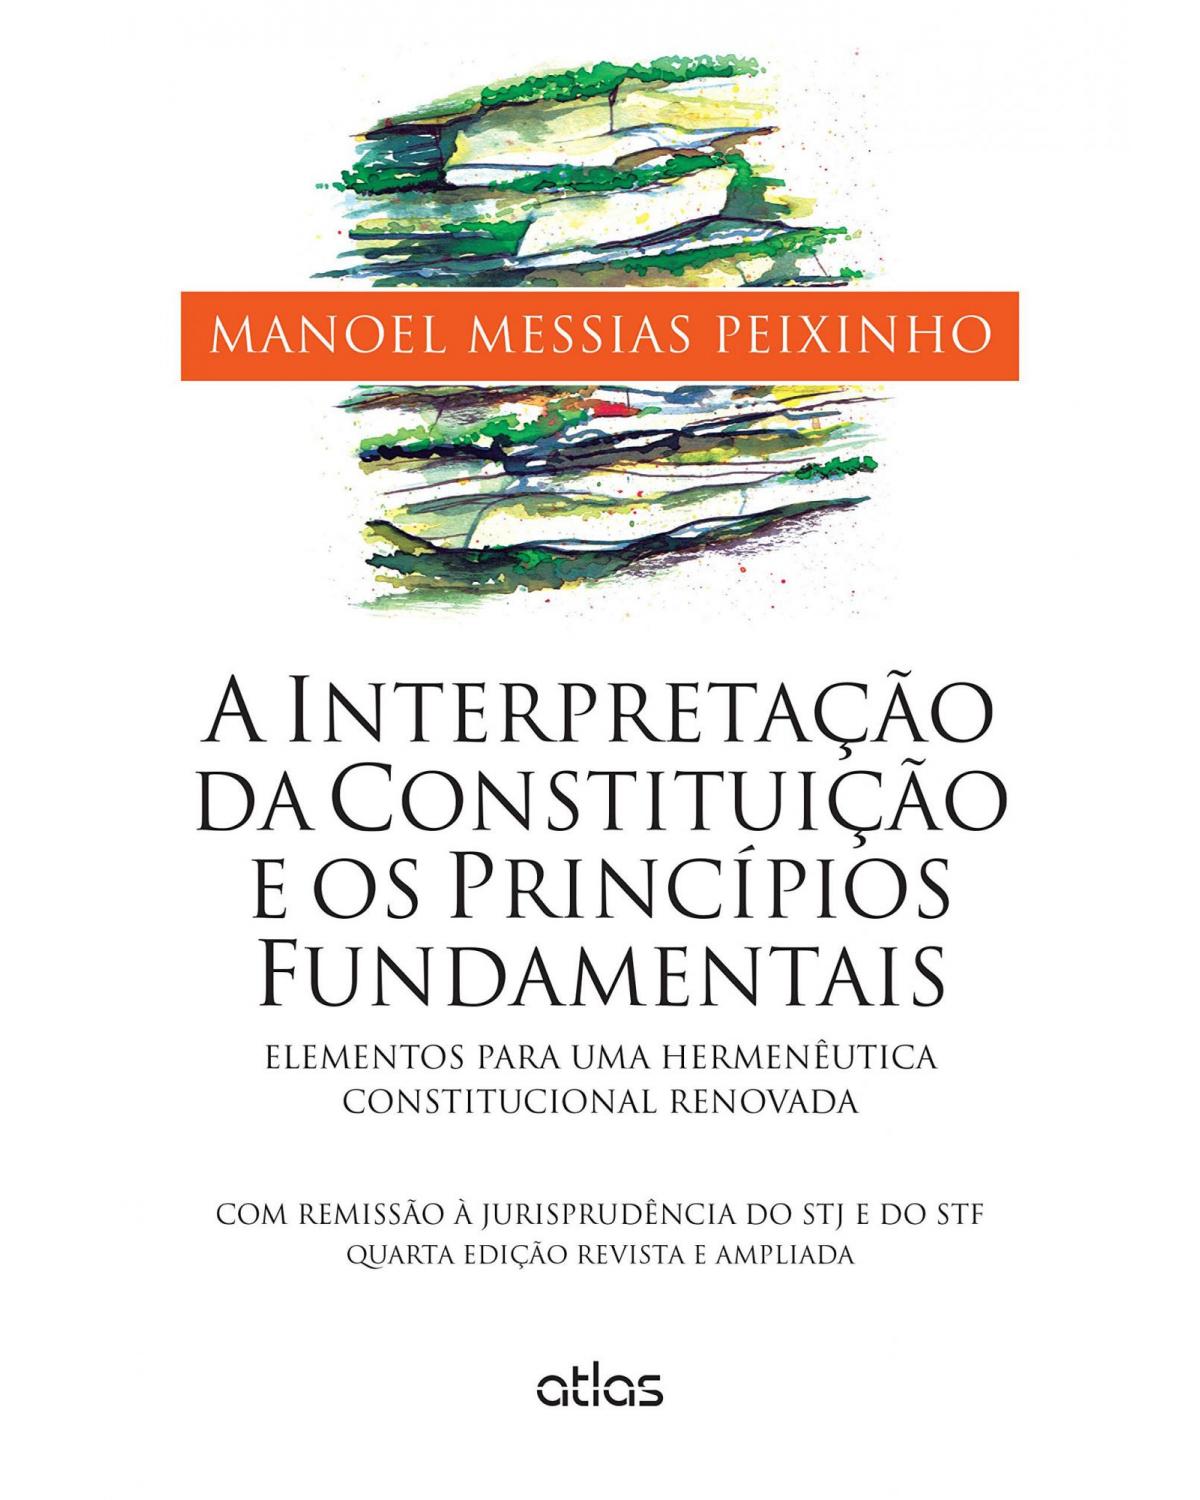 A interpretação da constituição e os princípios fundamentais - Elementos para uma hermenêutica constitucional renovada - 4ª Edição | 2015